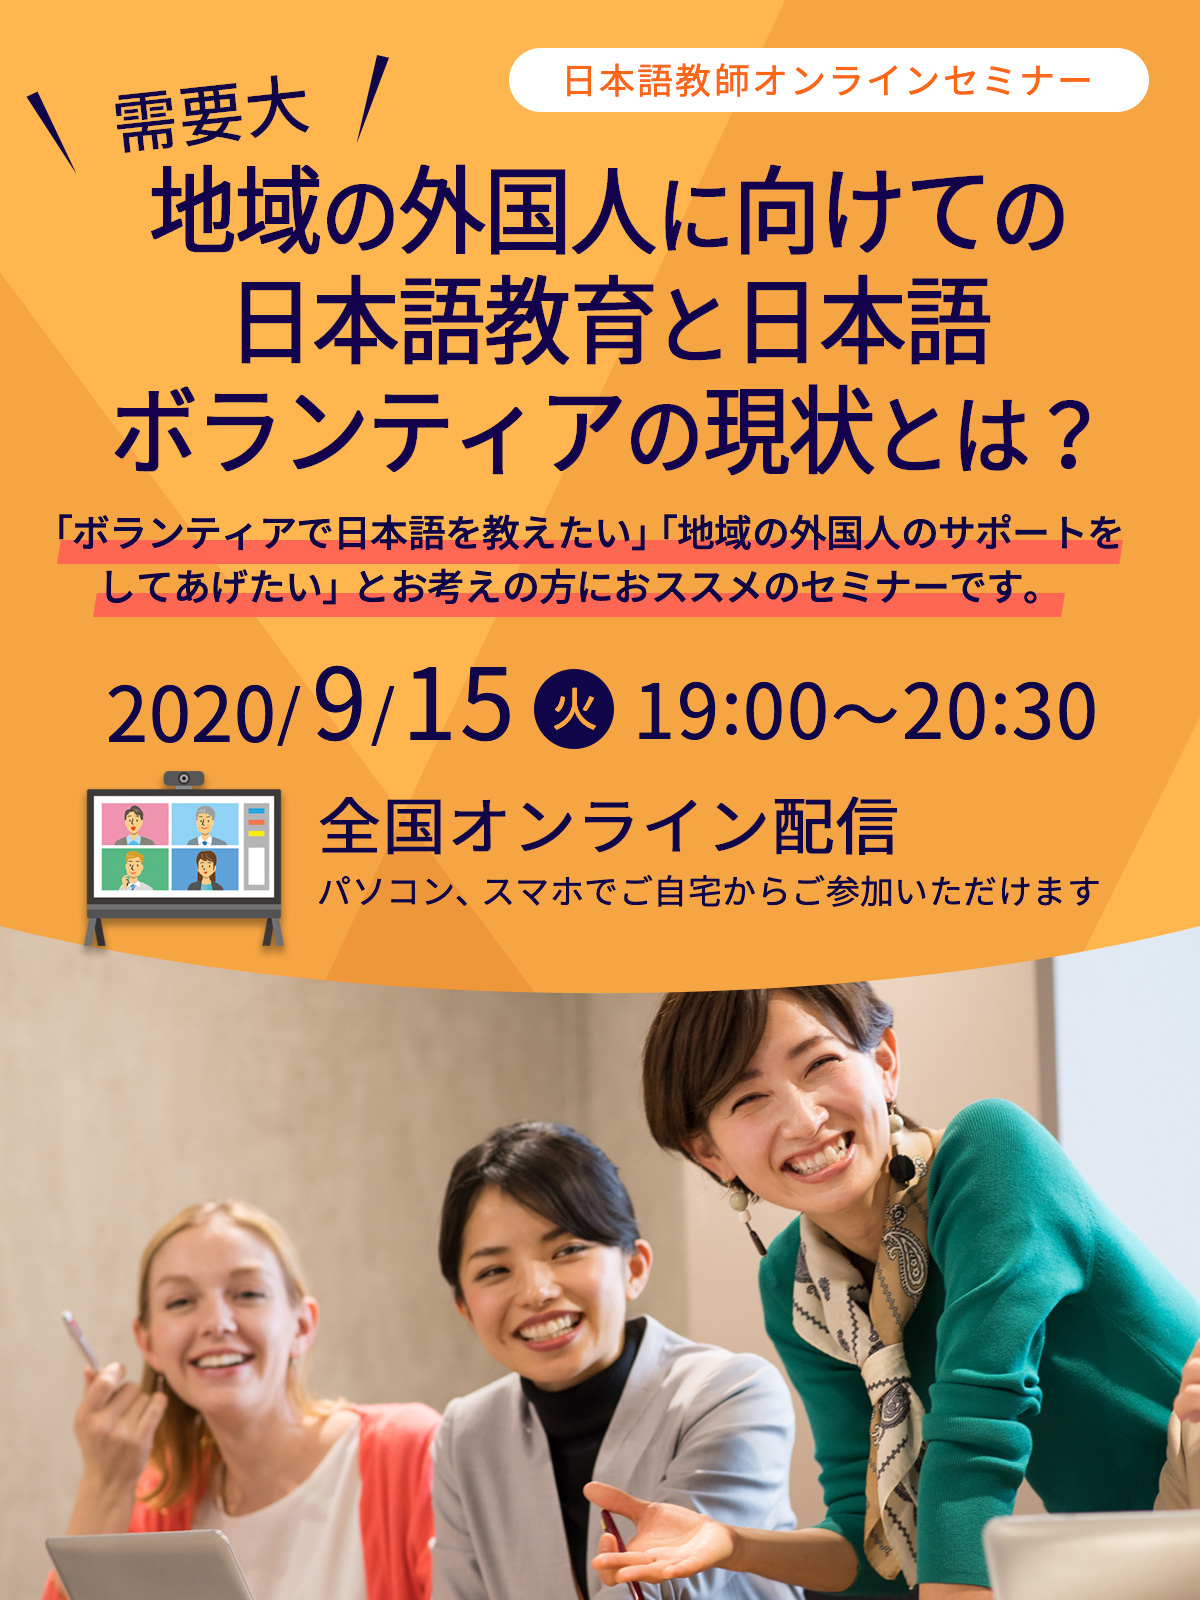 9 15開催 日本語教師オンラインセミナー 地域の外国人に向けての日本語教育と日本語ボランティアの現状とは 資格取得 就転職の専門校のヒューマン アカデミー